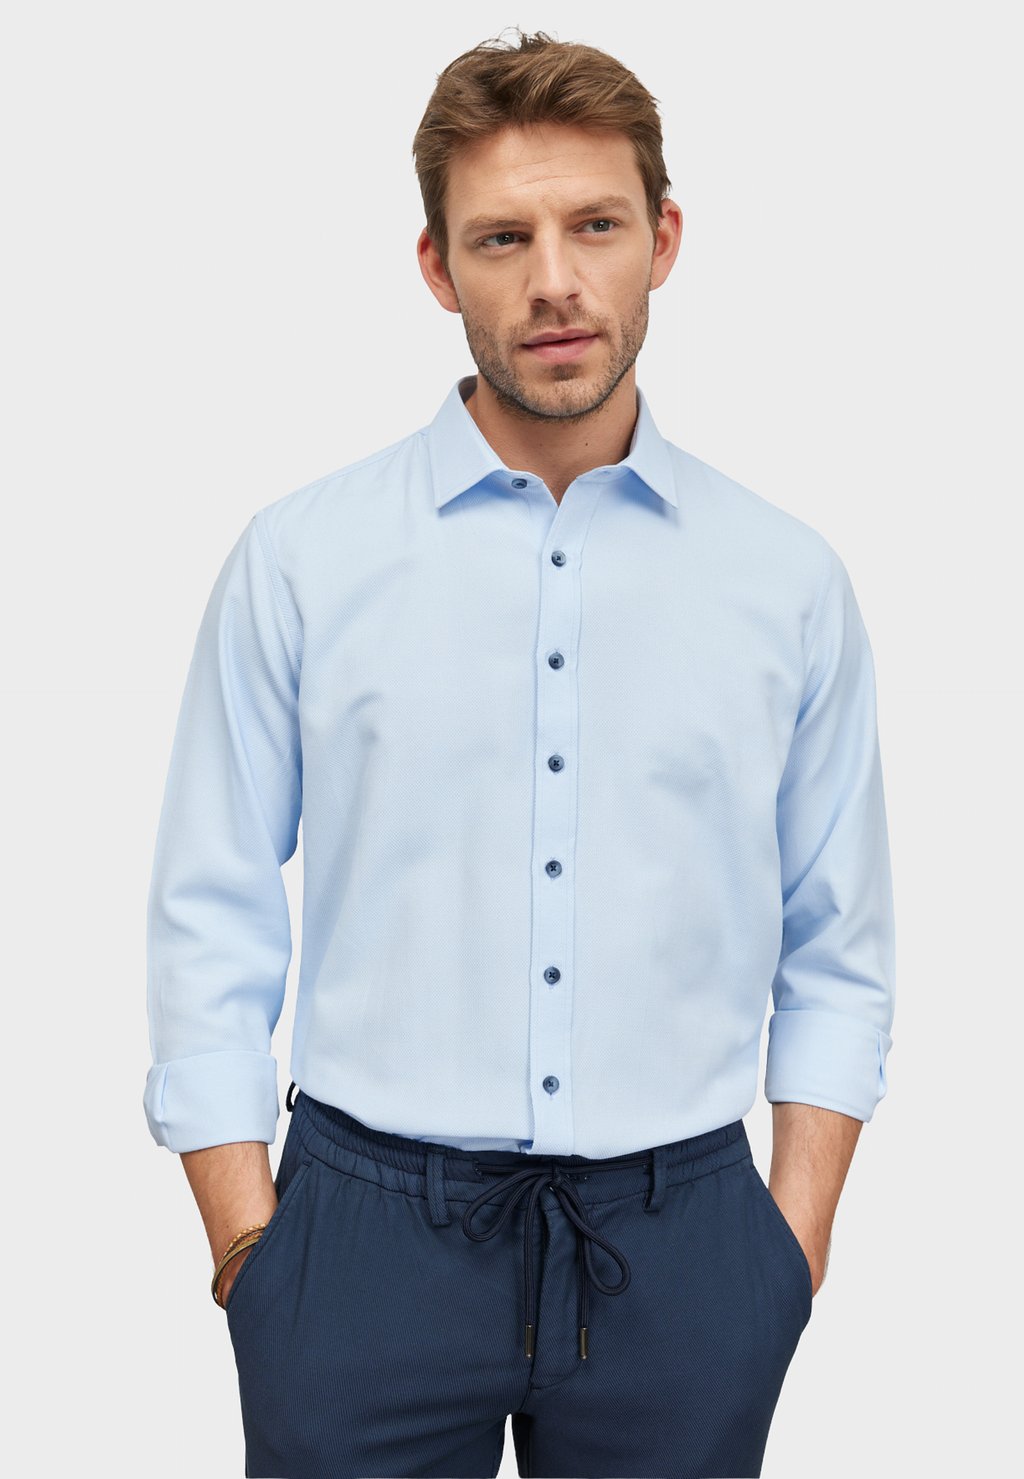 Деловая рубашка COMFORT FIT DOBBY WEAVE AC&CO / ALTINYILDIZ CLASSICS, цвет Comfort Fit Dobby Weave Shirt